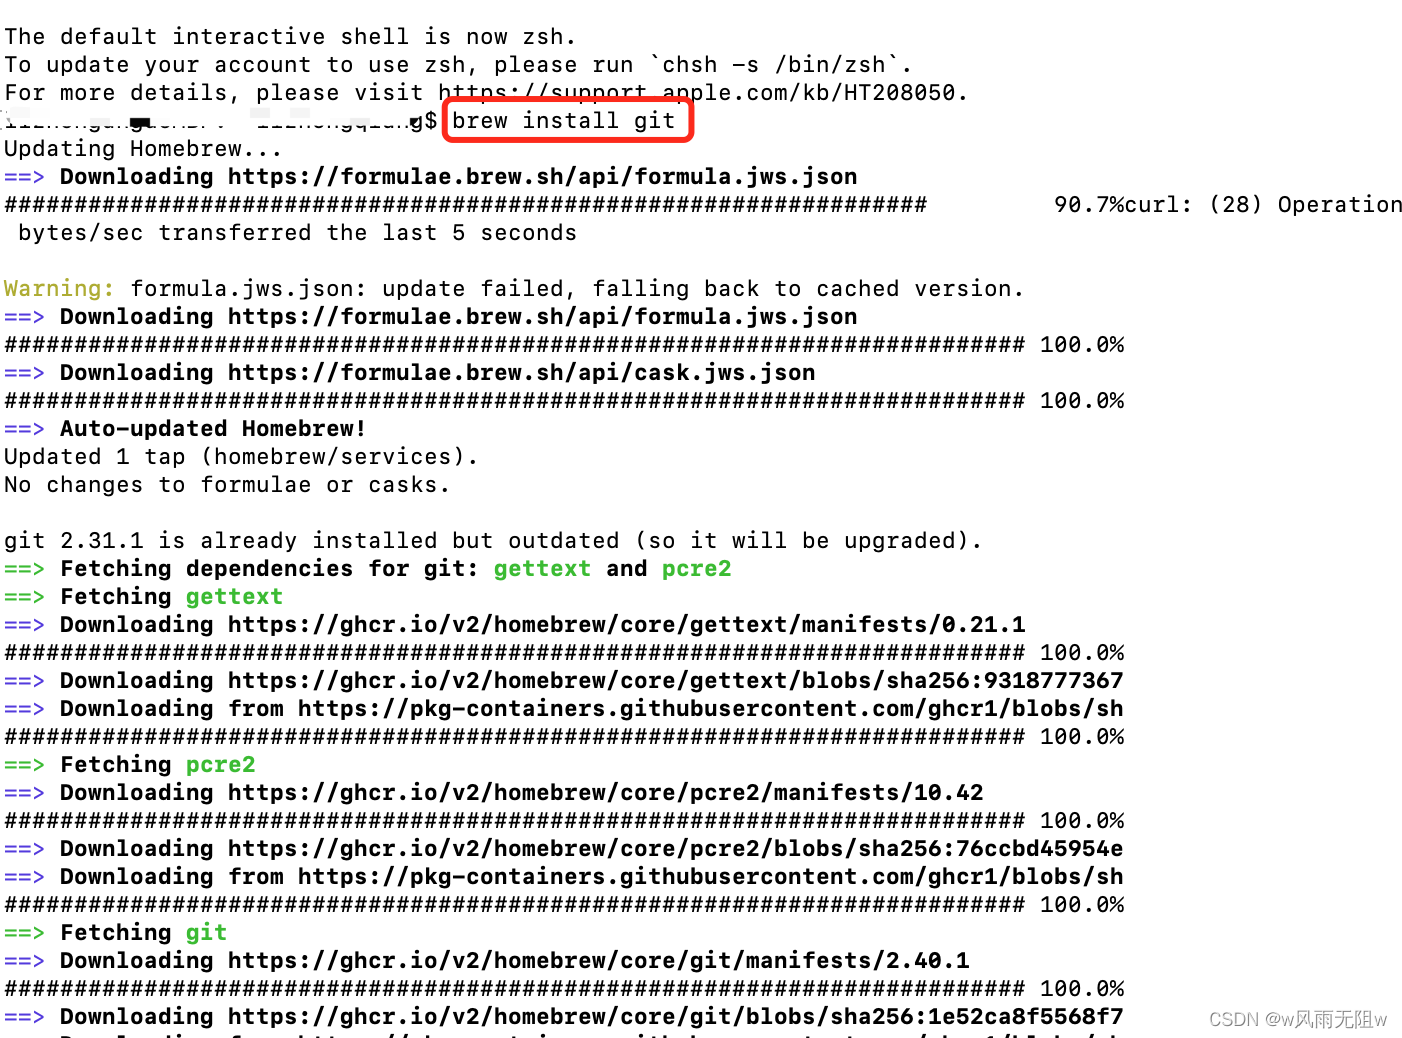 mac下用git客户端生成ssh秘钥并配置到souretree进行使用